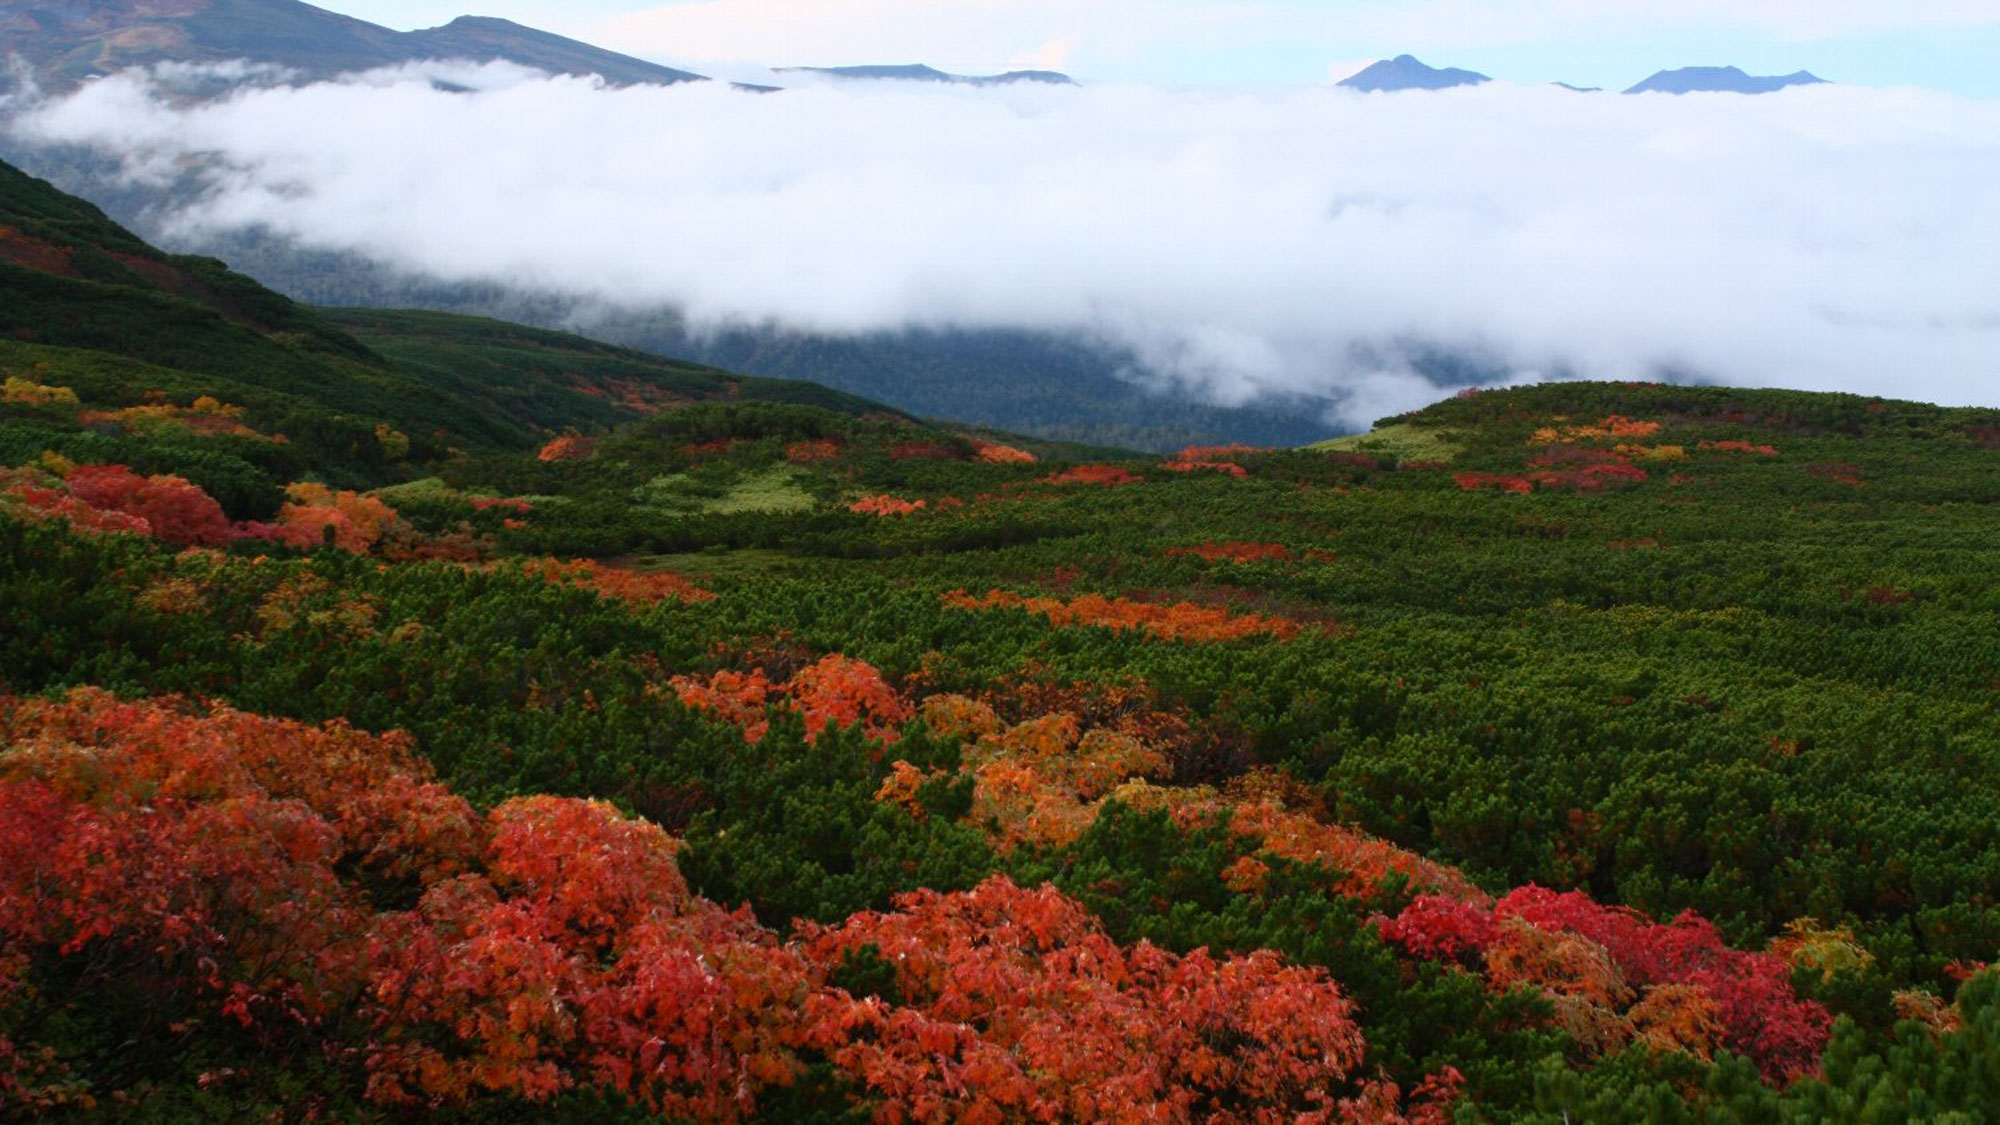 紅葉の先に雲海が広がる見事な絶景